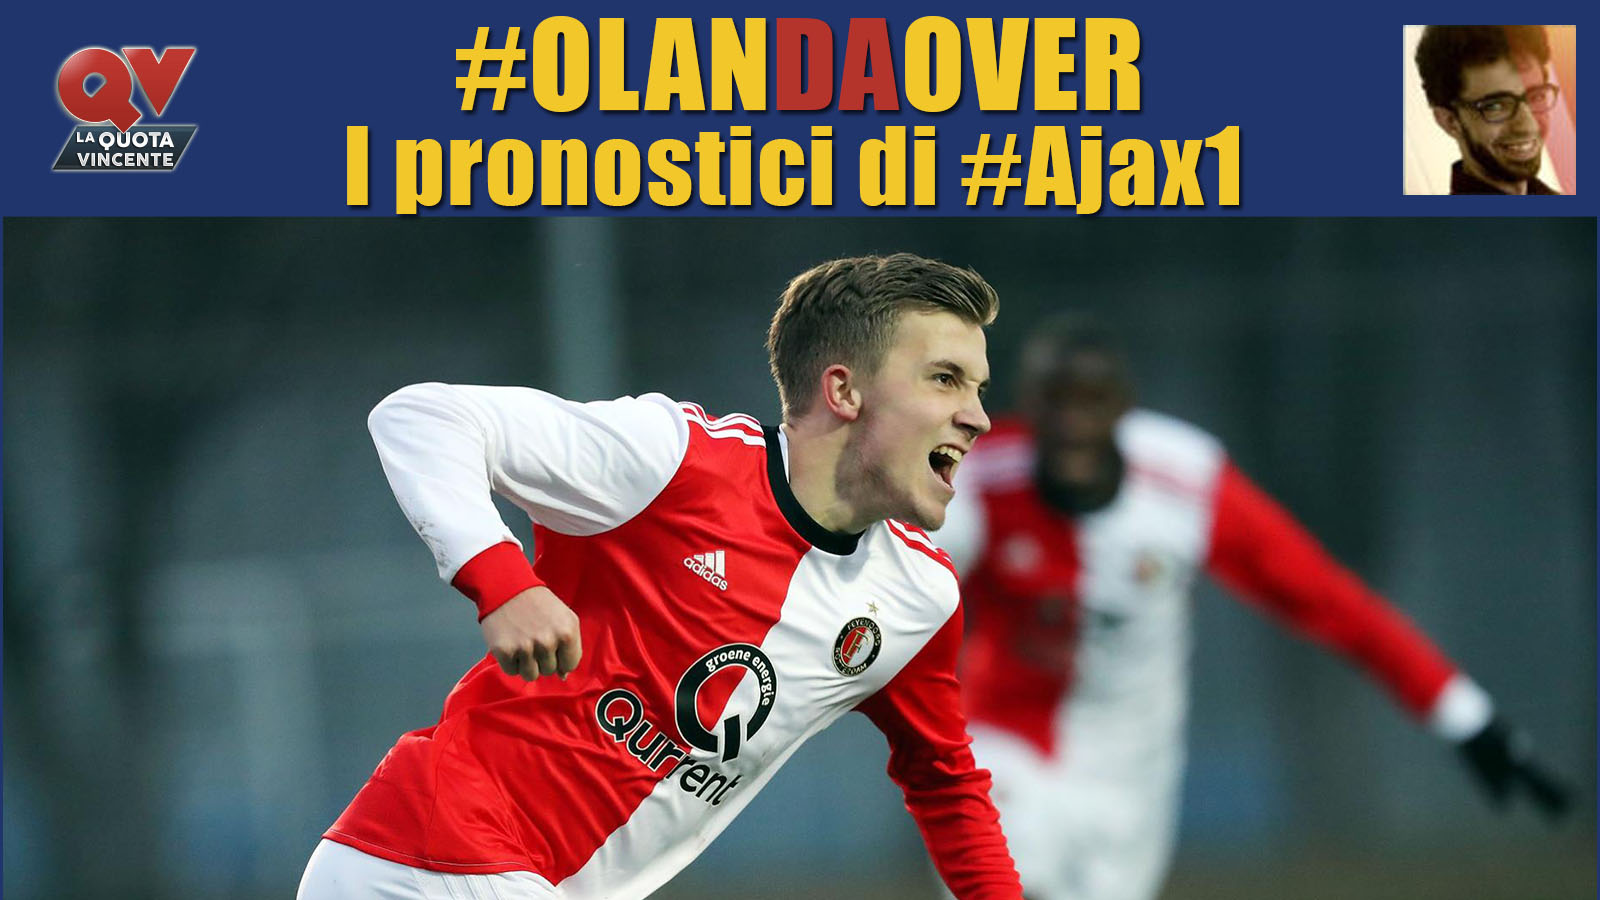 Pronostici Eredivisie giornata 12: tutte le quote e le bollette di #OlanDaOver il blog di #Ajax1!